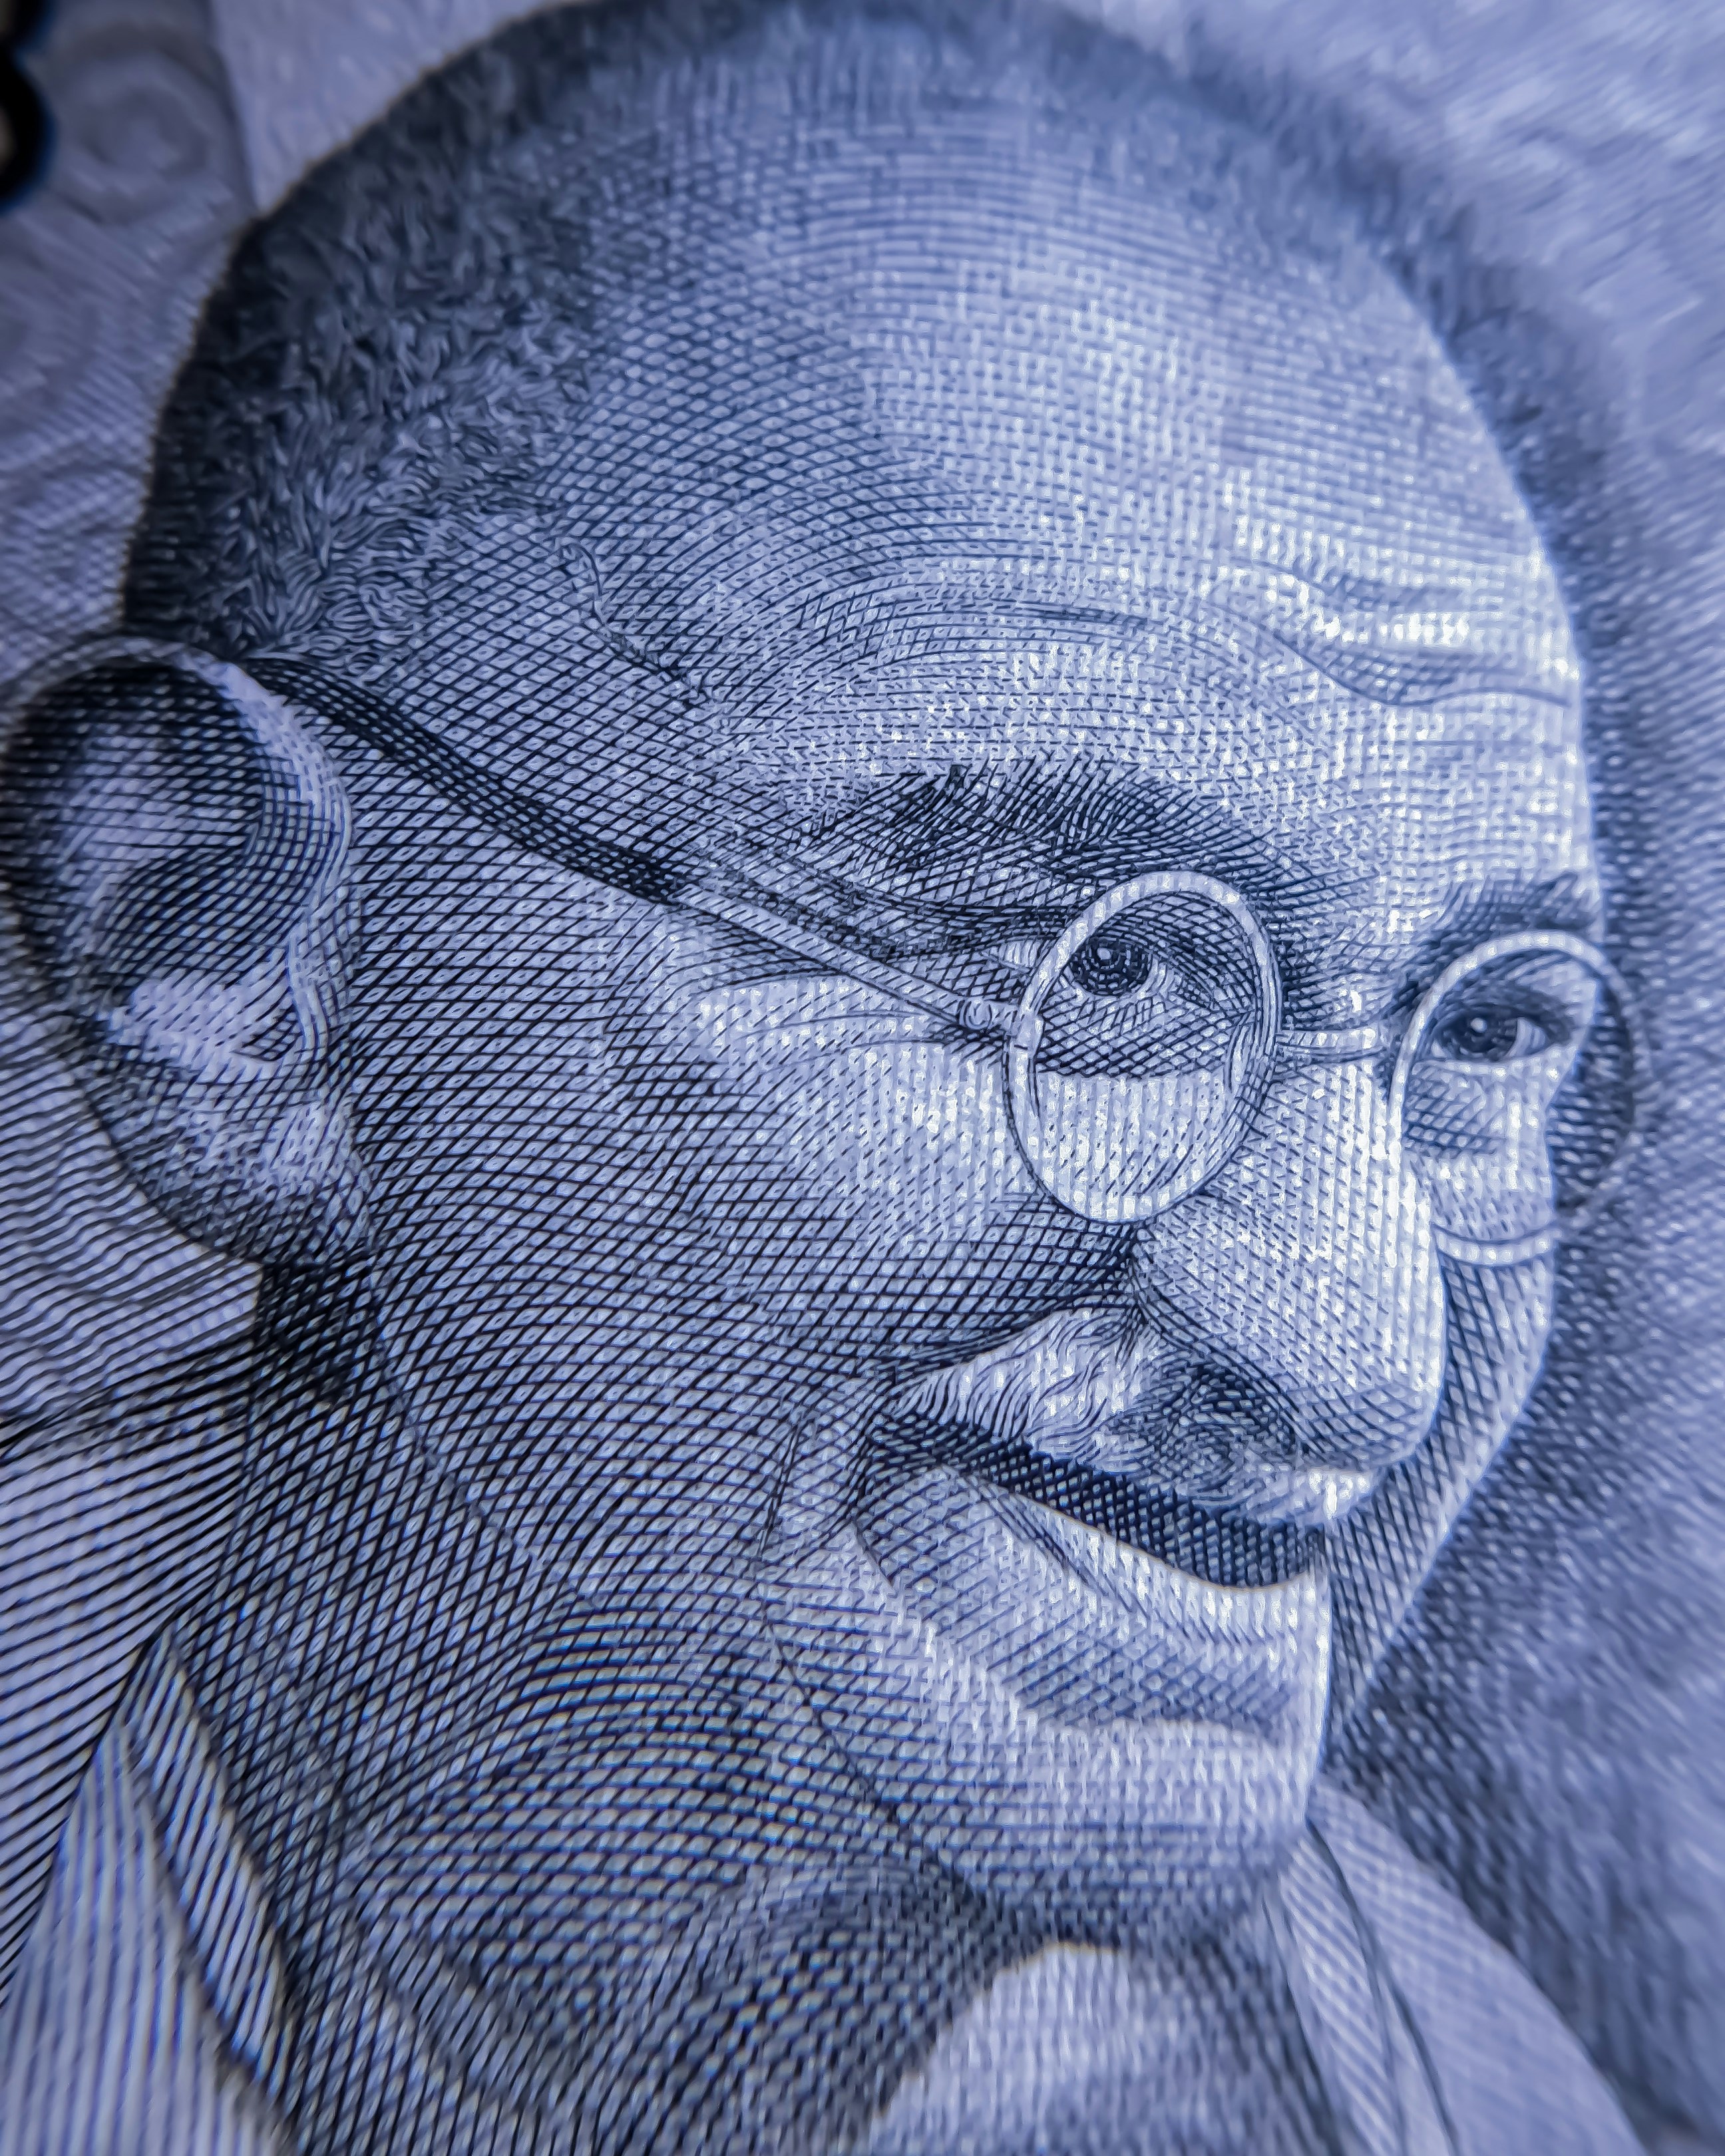 Retrato do Mahatma Gandhi cravado em cédula indiana